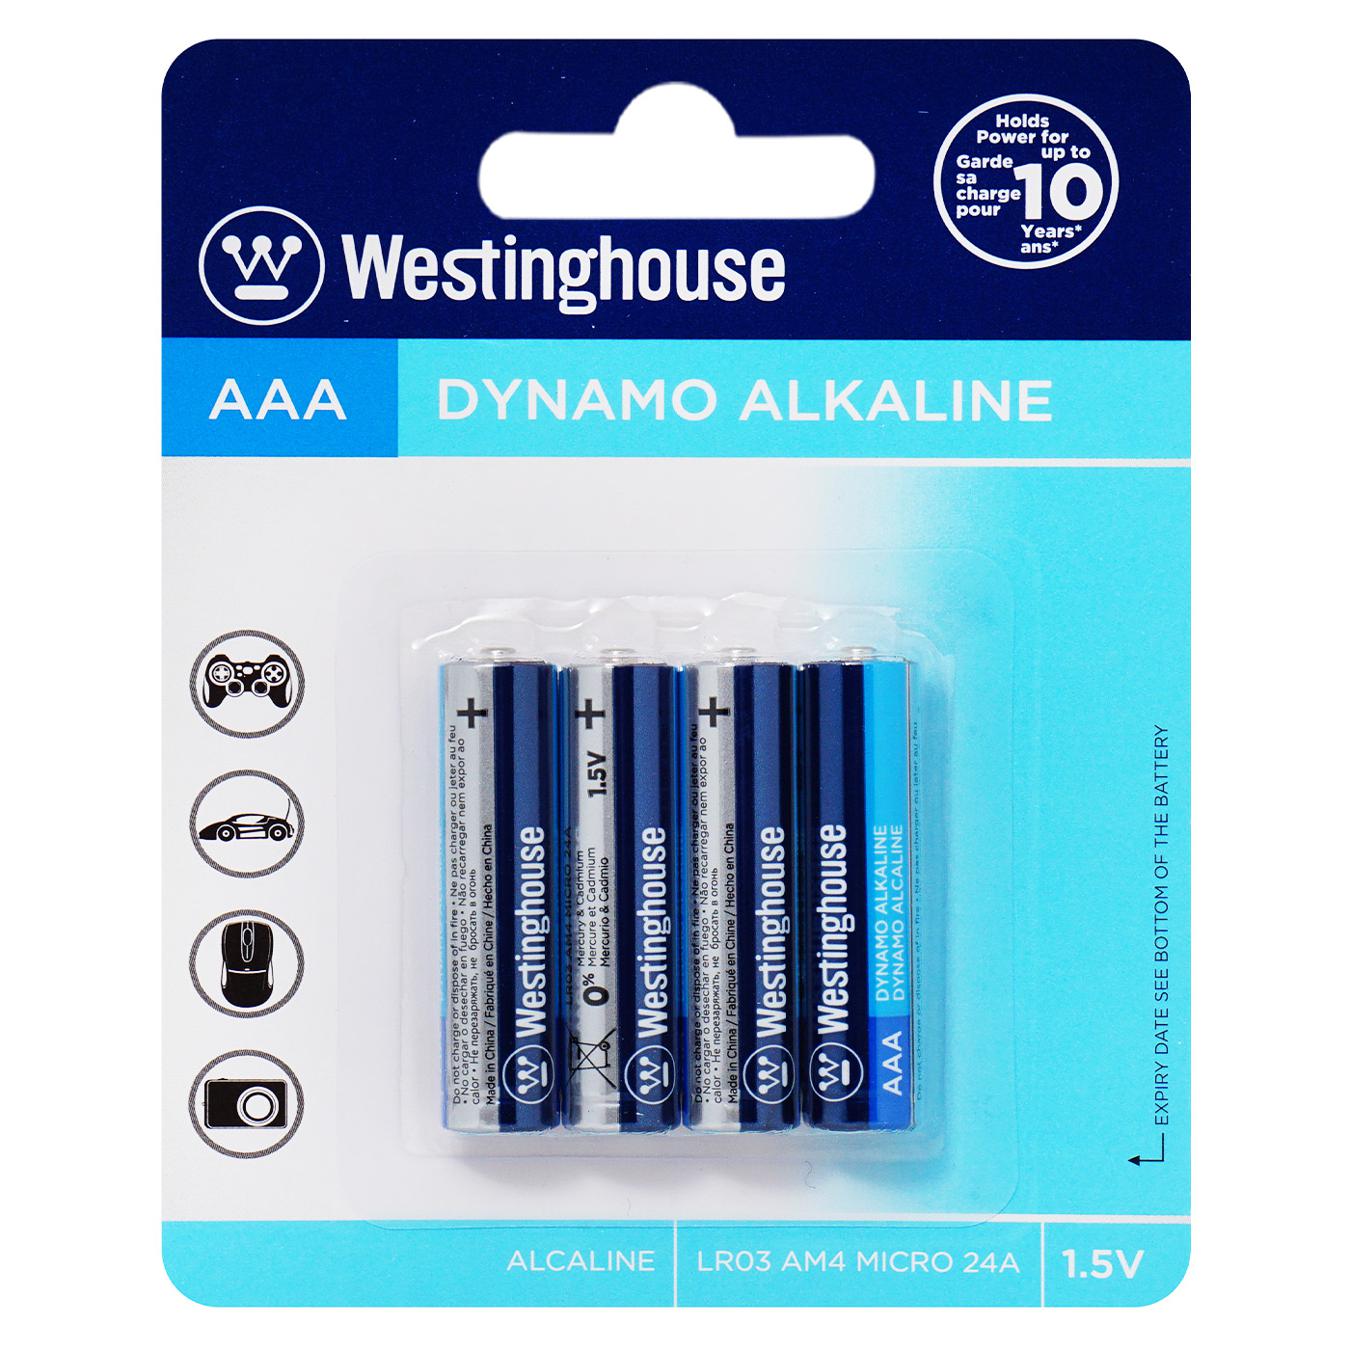 Battery Westinghouse Alkaline Dynamo AAA 4 pcs